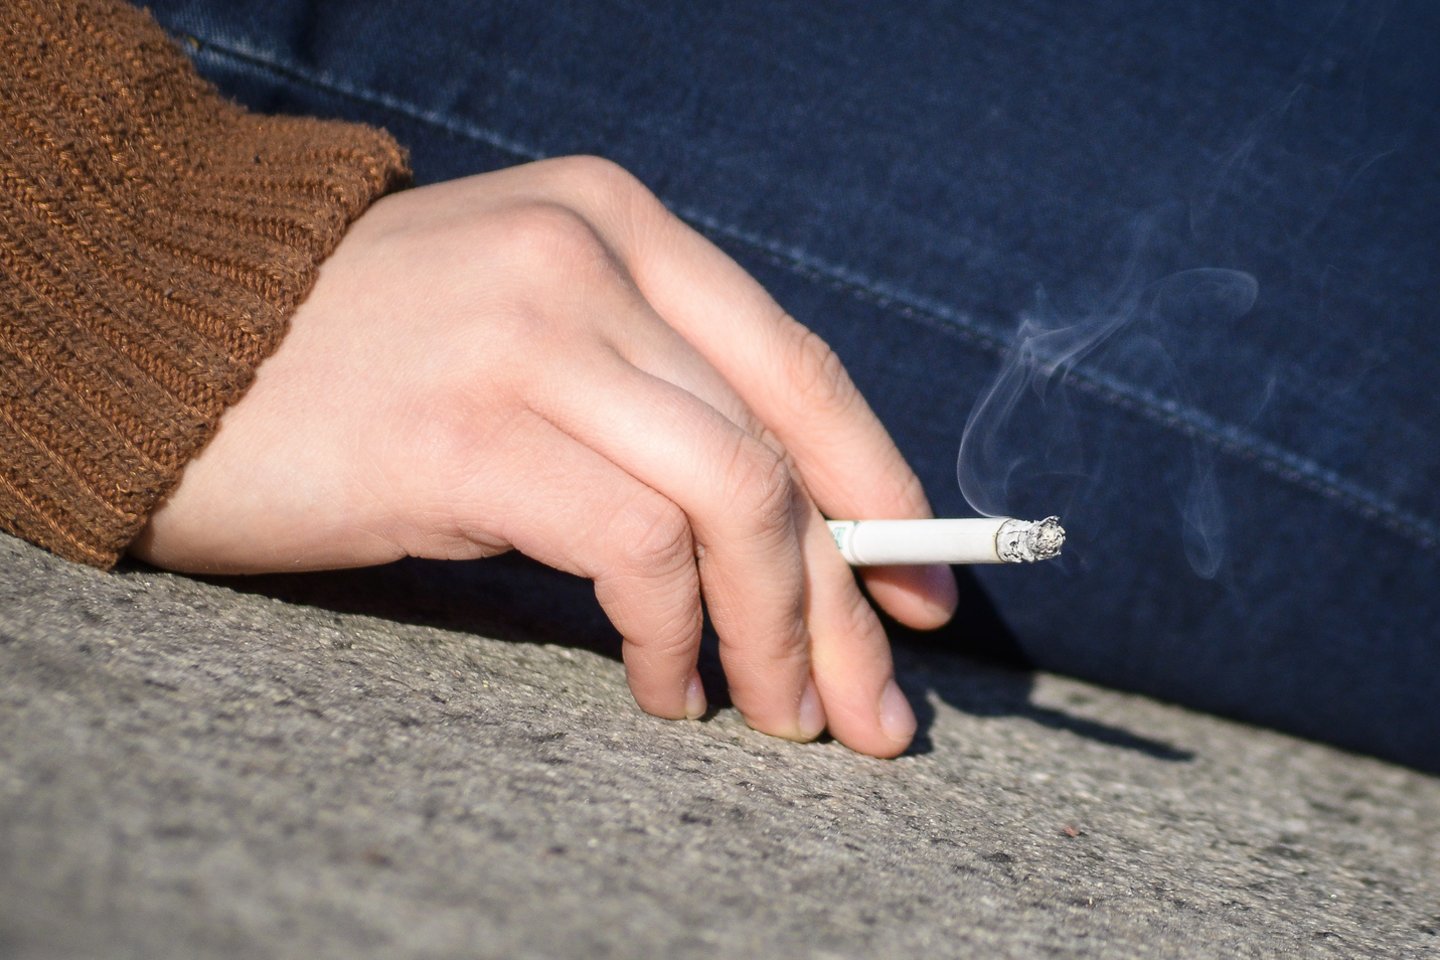 Siekiant mažinti priklausomybę nuo tabako ir jo sukeliamą žalą sveikatai, Ministrų kabinetas pritarė Sveikatos apsaugos ministerijos (SAM) siūlymui nebereklamuoti nuolaidų tabako gaminiams.<br>J.Stacevičiaus nuotr.